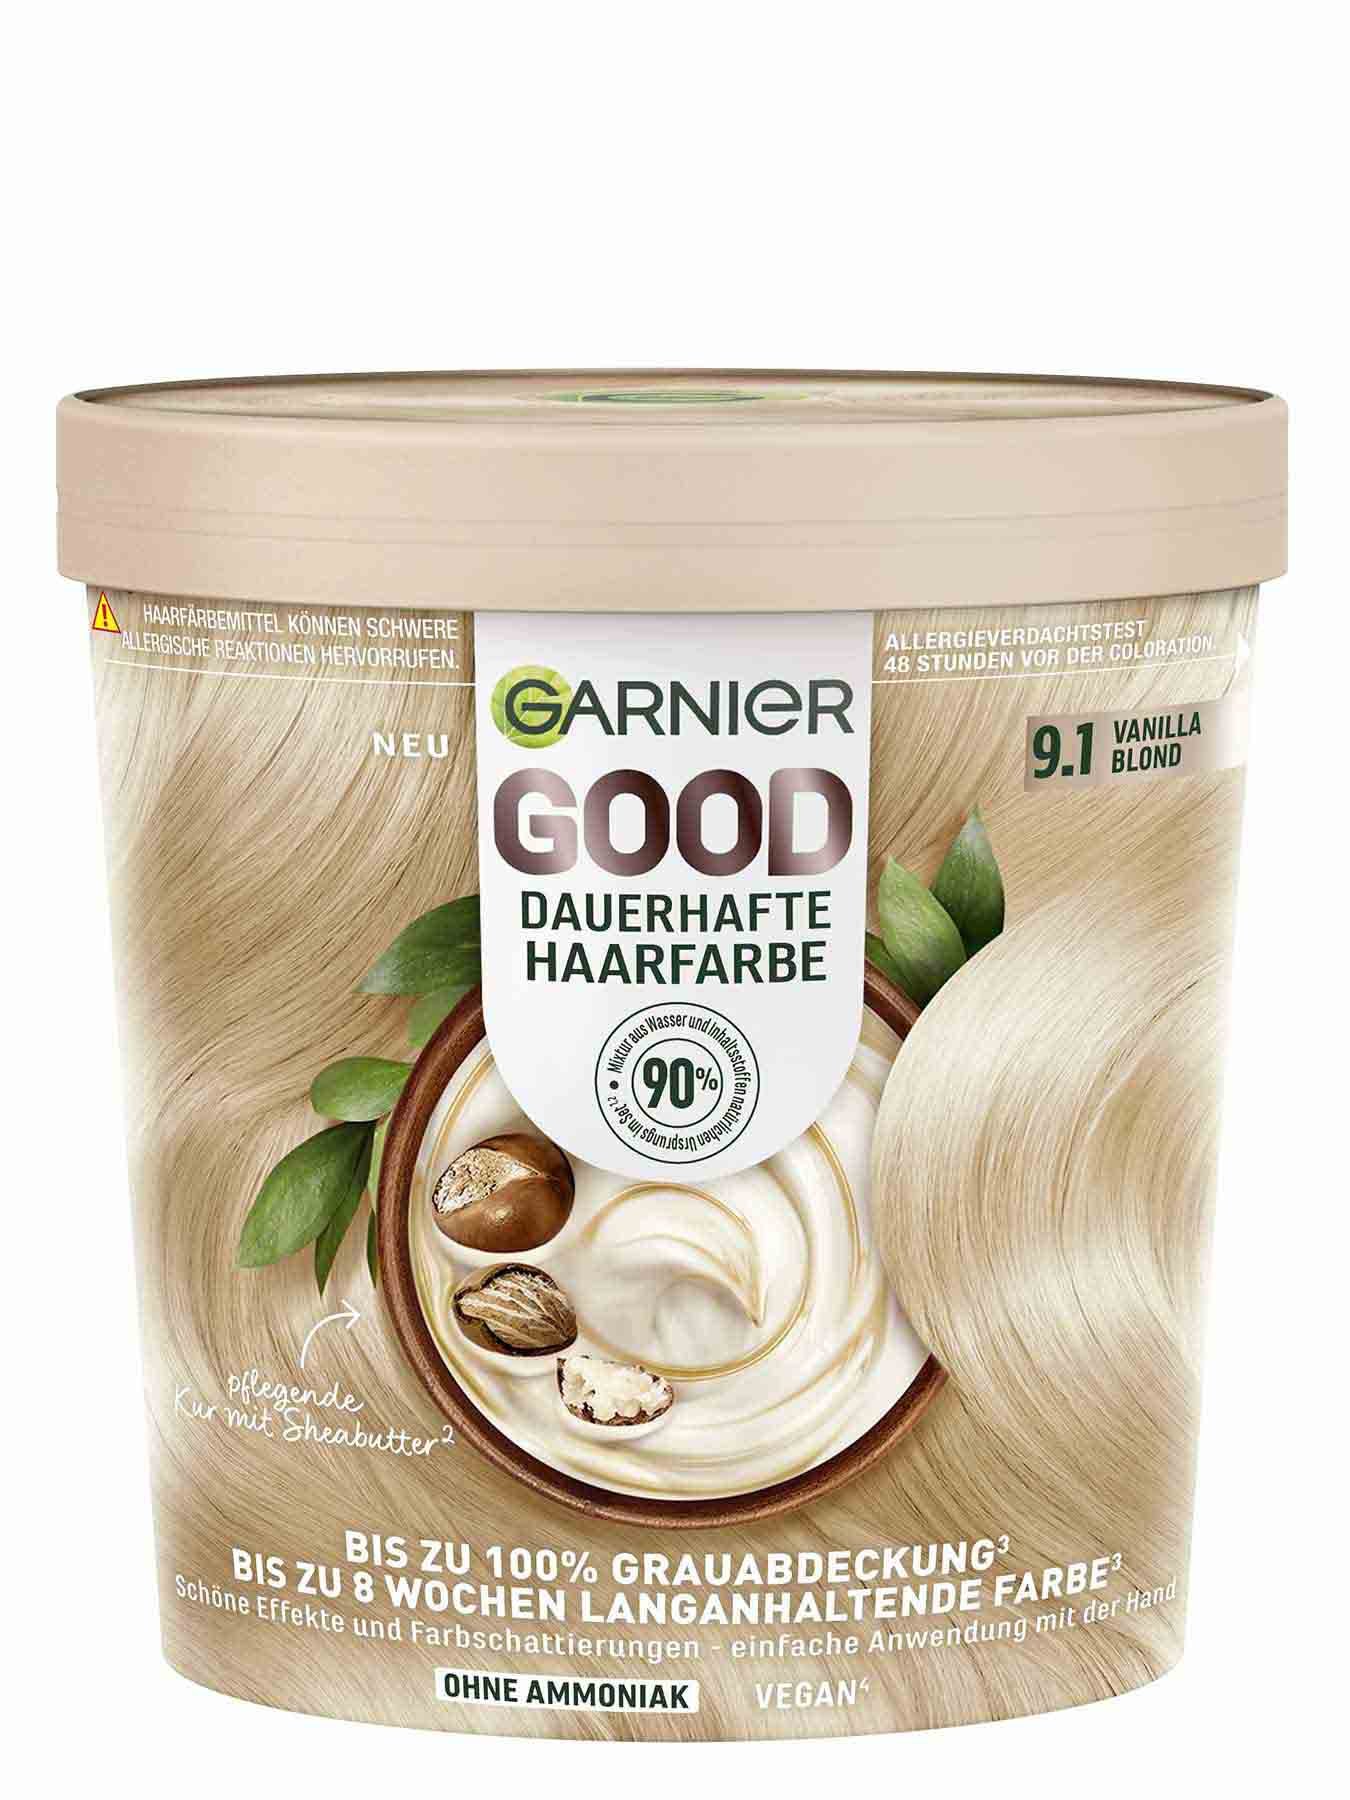 GOOD Dauerhafte Haarfarbe 9.1 Vanilla Blond Produktbild